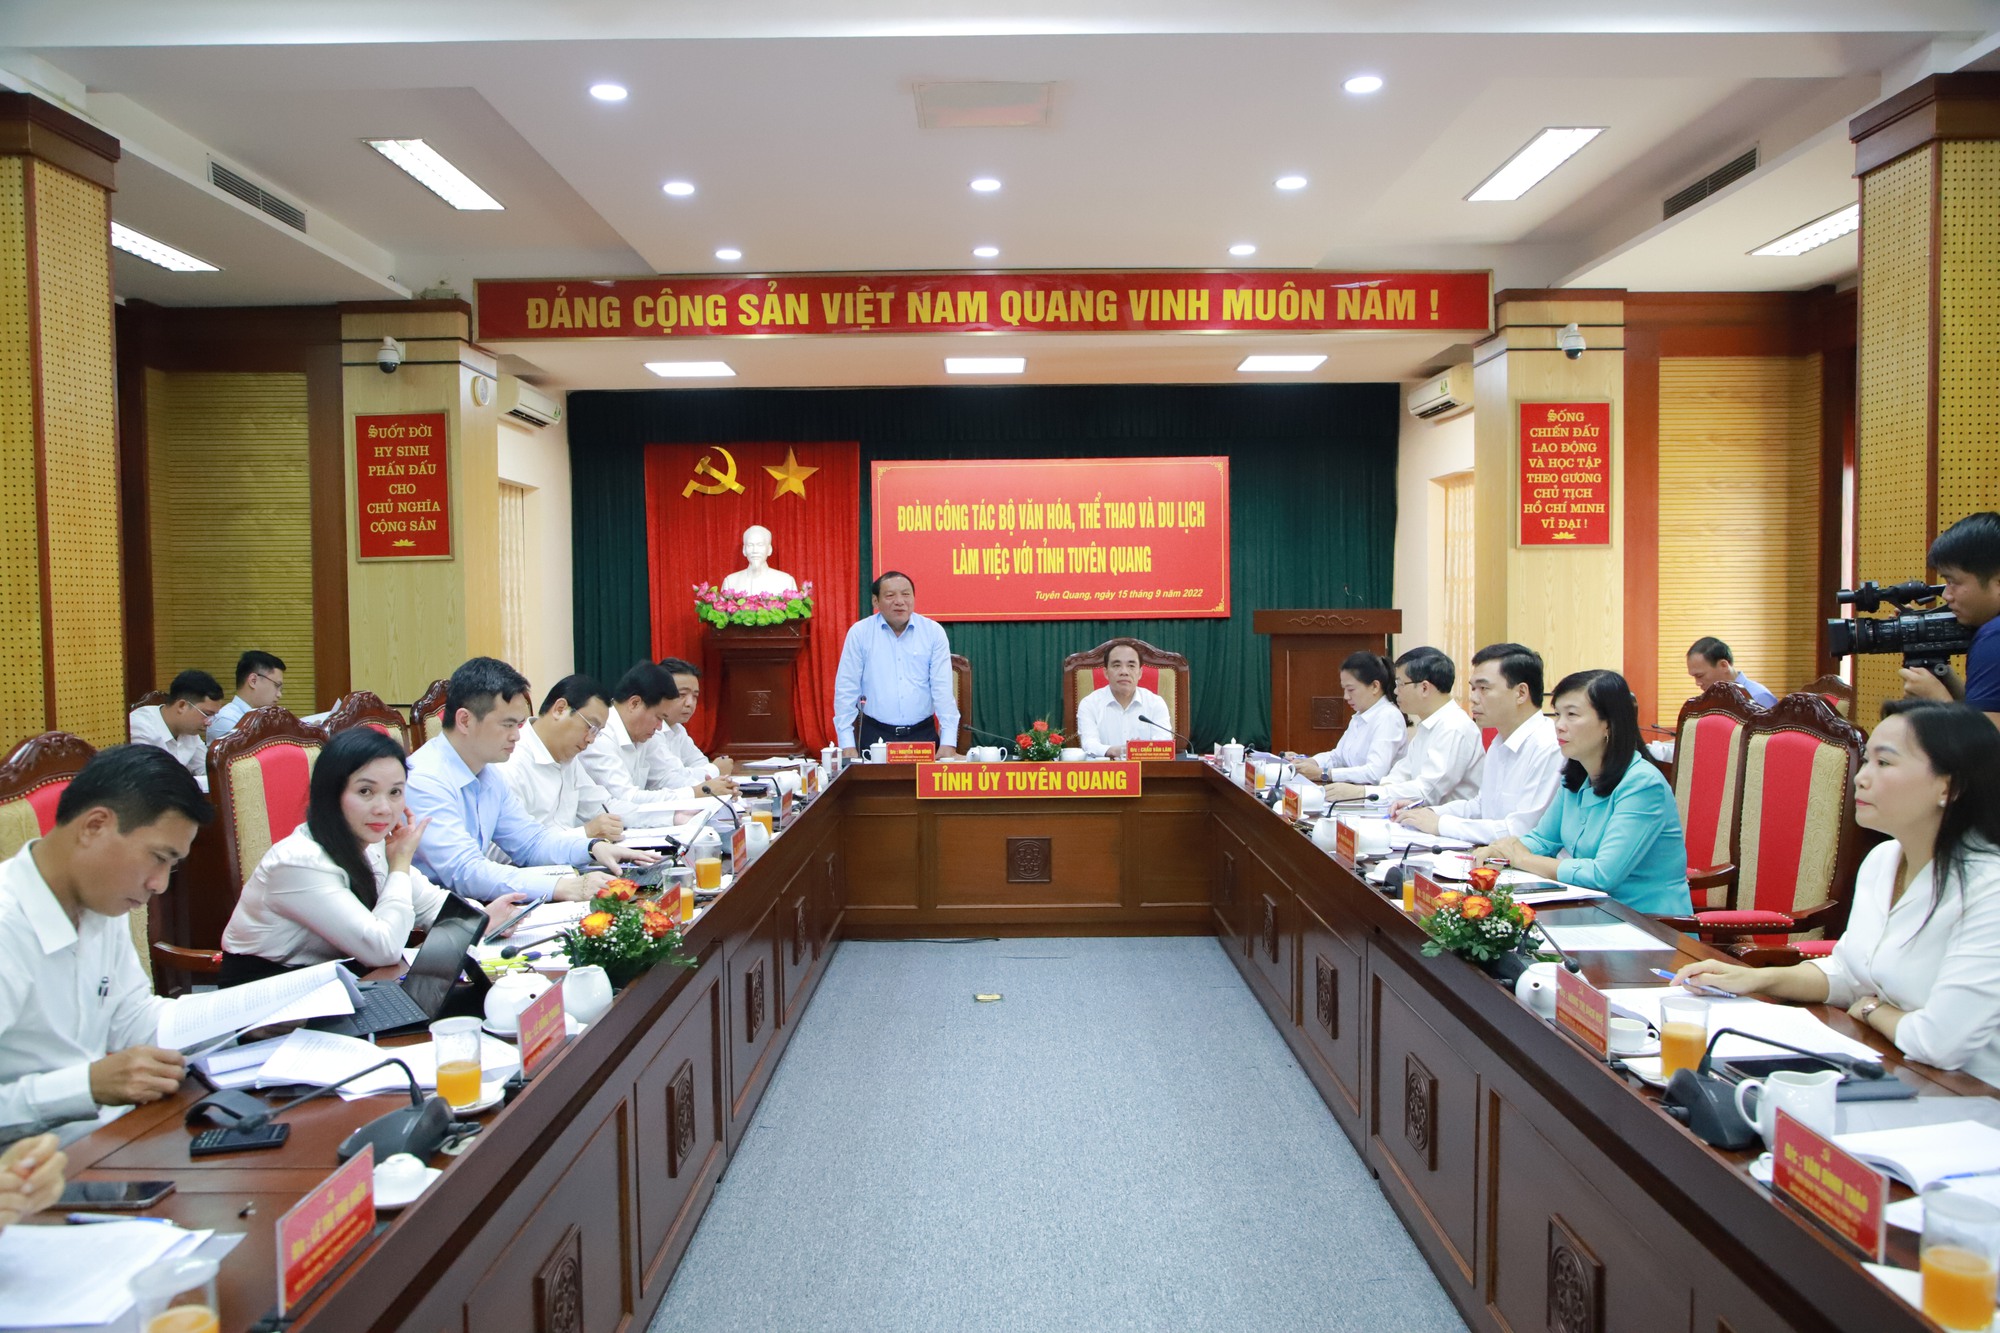 Bộ trưởng Nguyễn Văn Hùng: Giữ gìn phát huy bản sắc văn hóa dân tộc, bảo tồn tôn tạo các di tích lịch sử sẽ kiến tạo sự bền vững